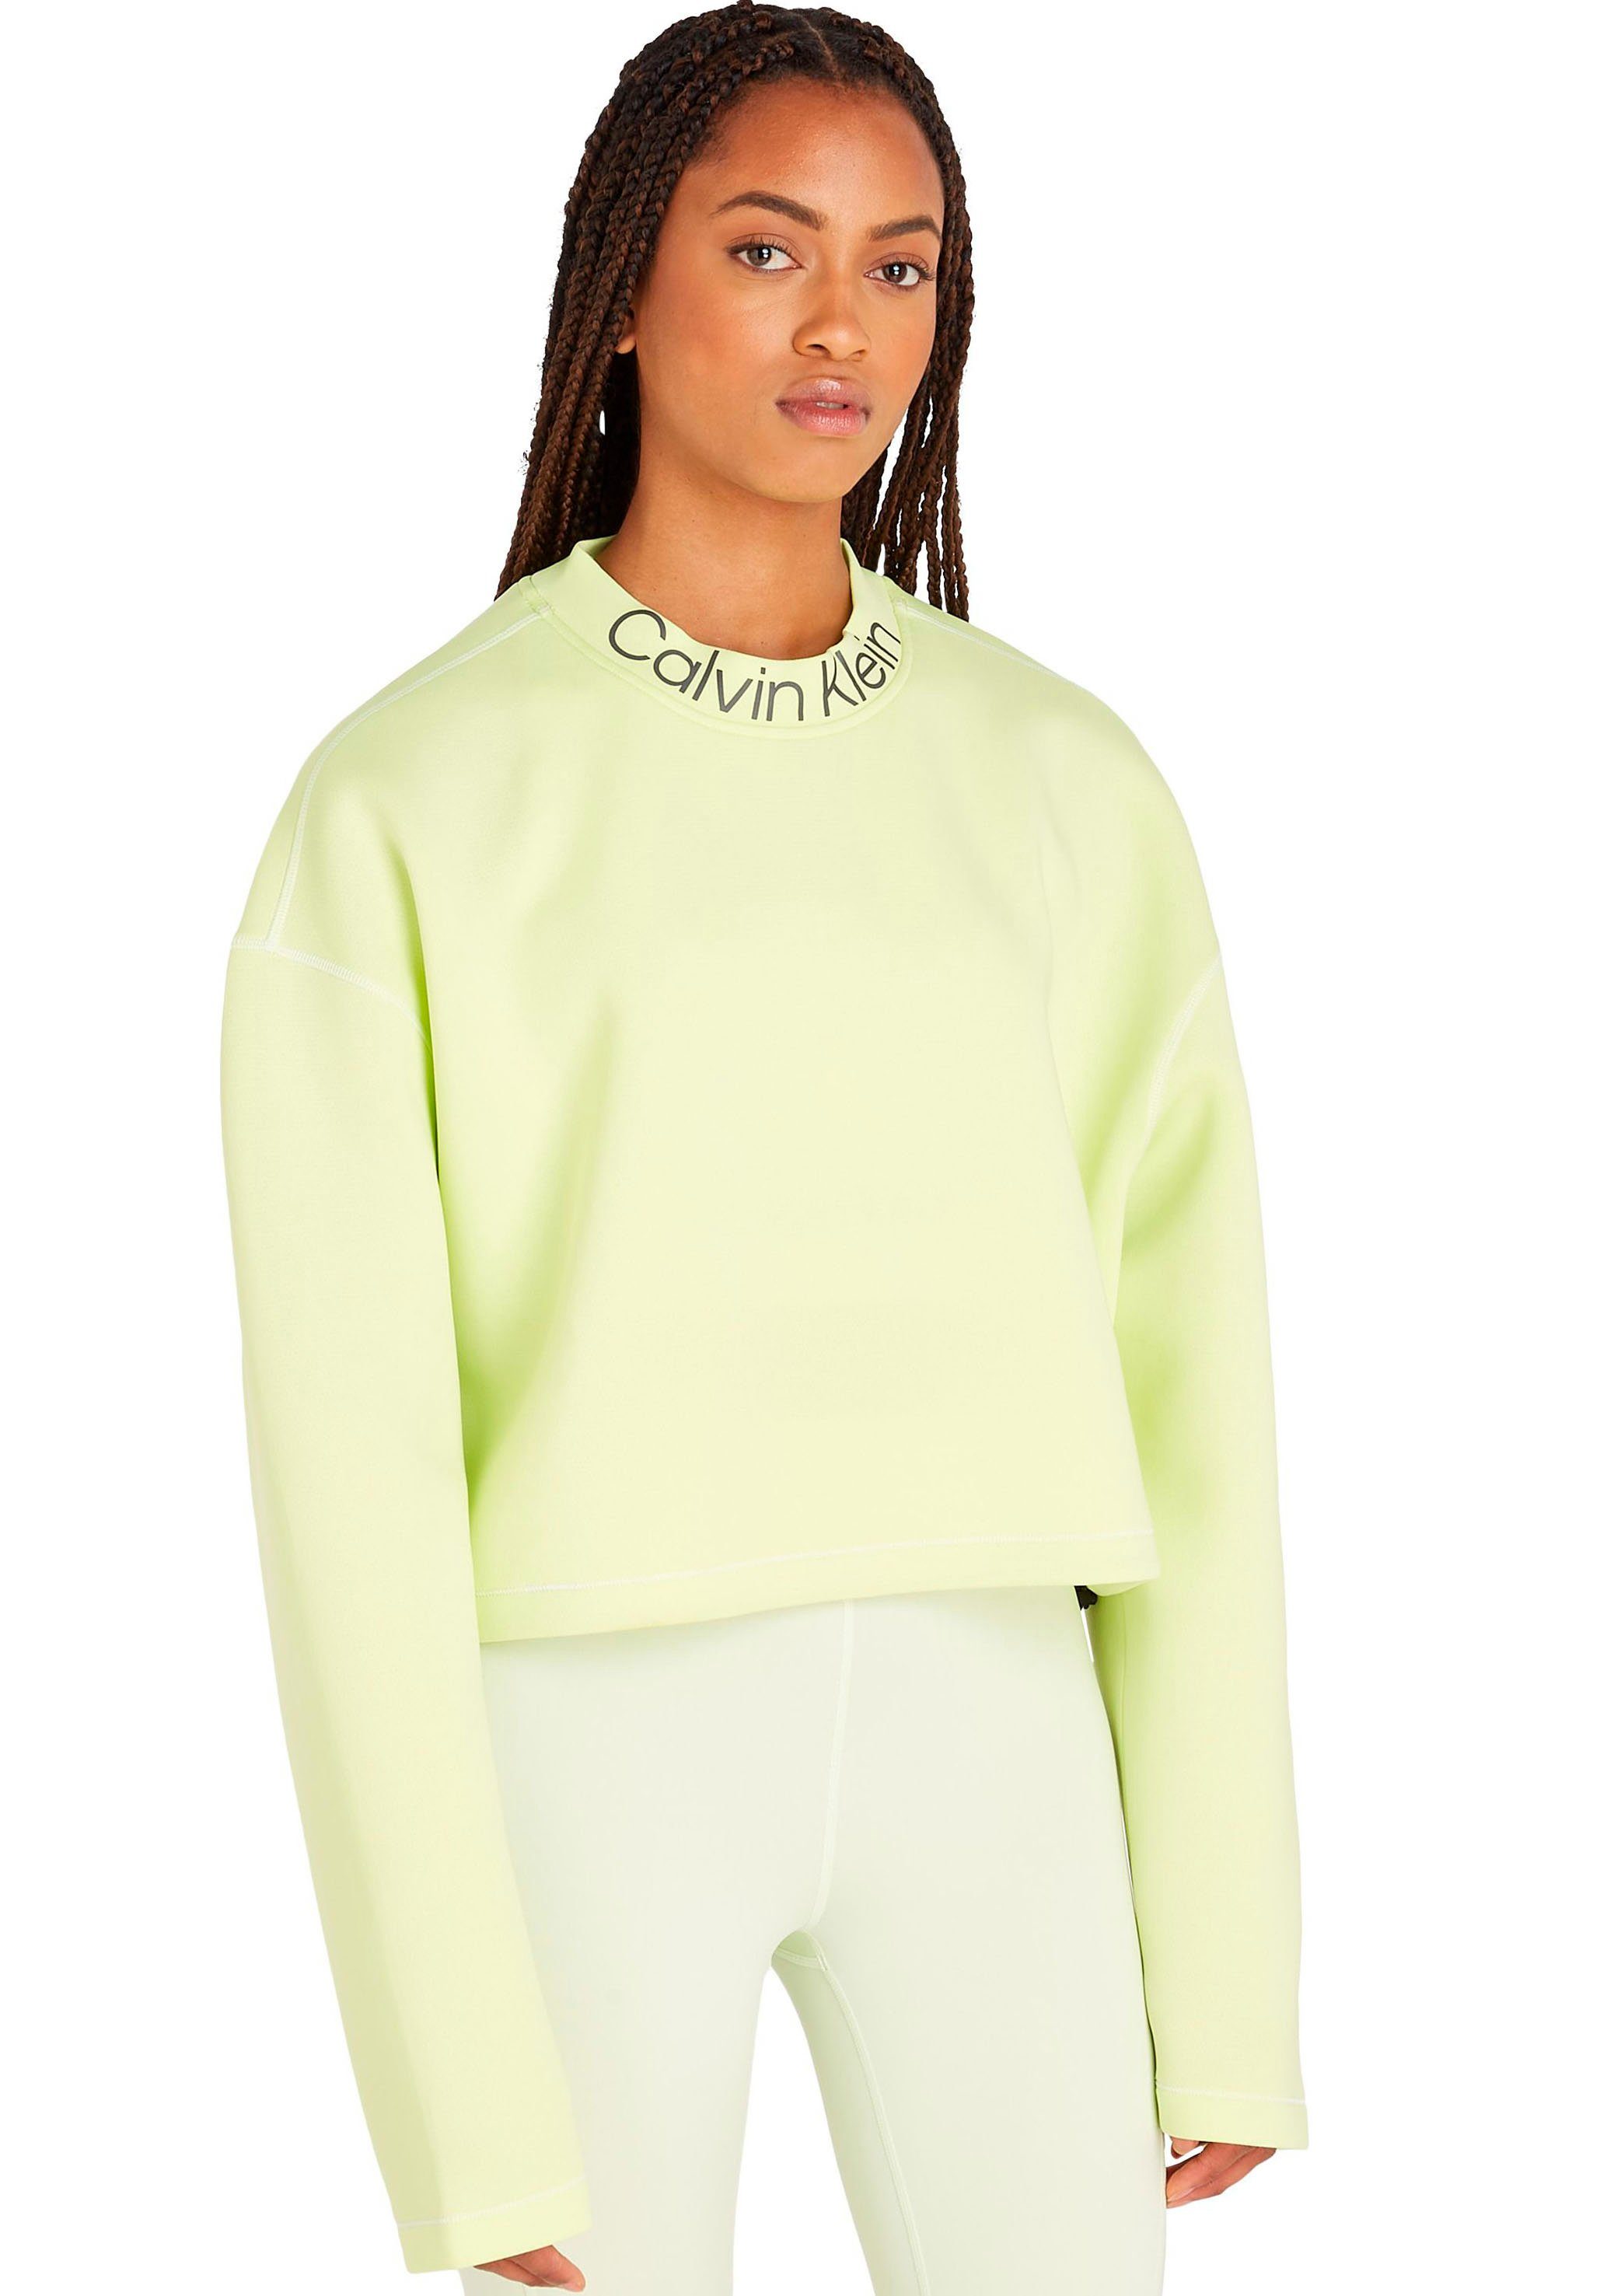 Calvin Klein Sport Rundhalspullover PW - Pullover limegrün